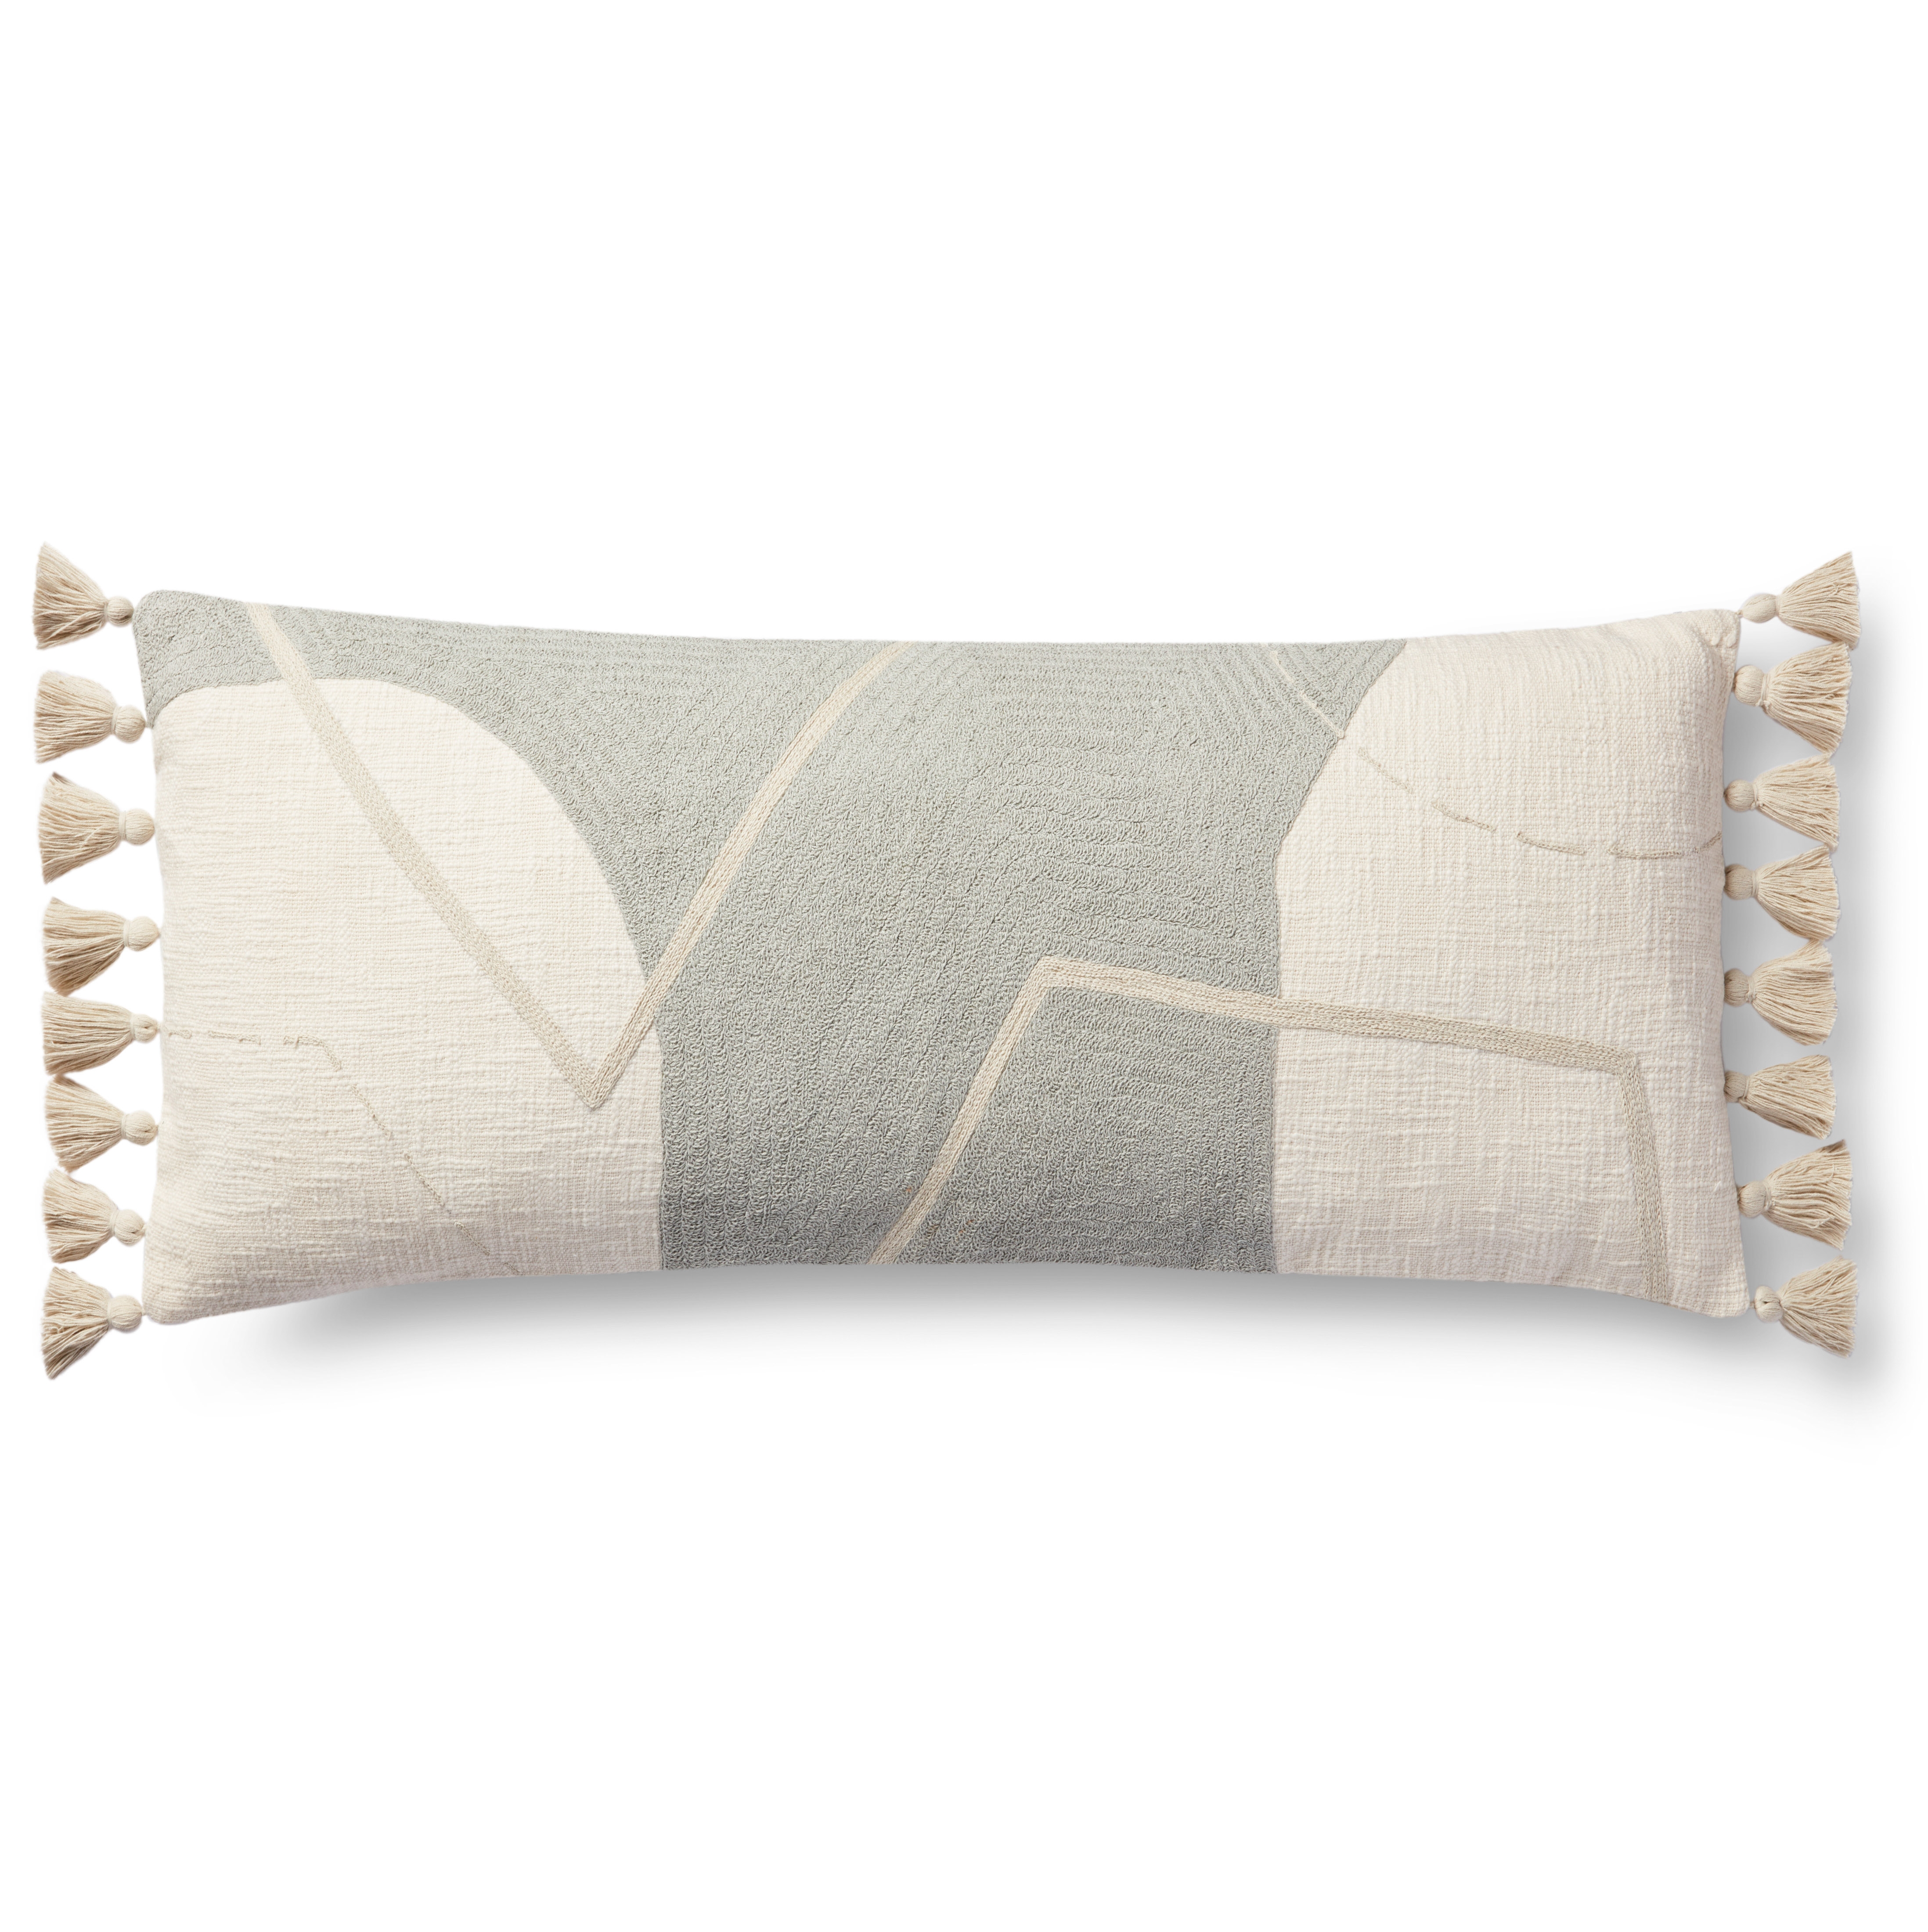 Holland Lumbar Pillow, 35" x 13" - Image 0